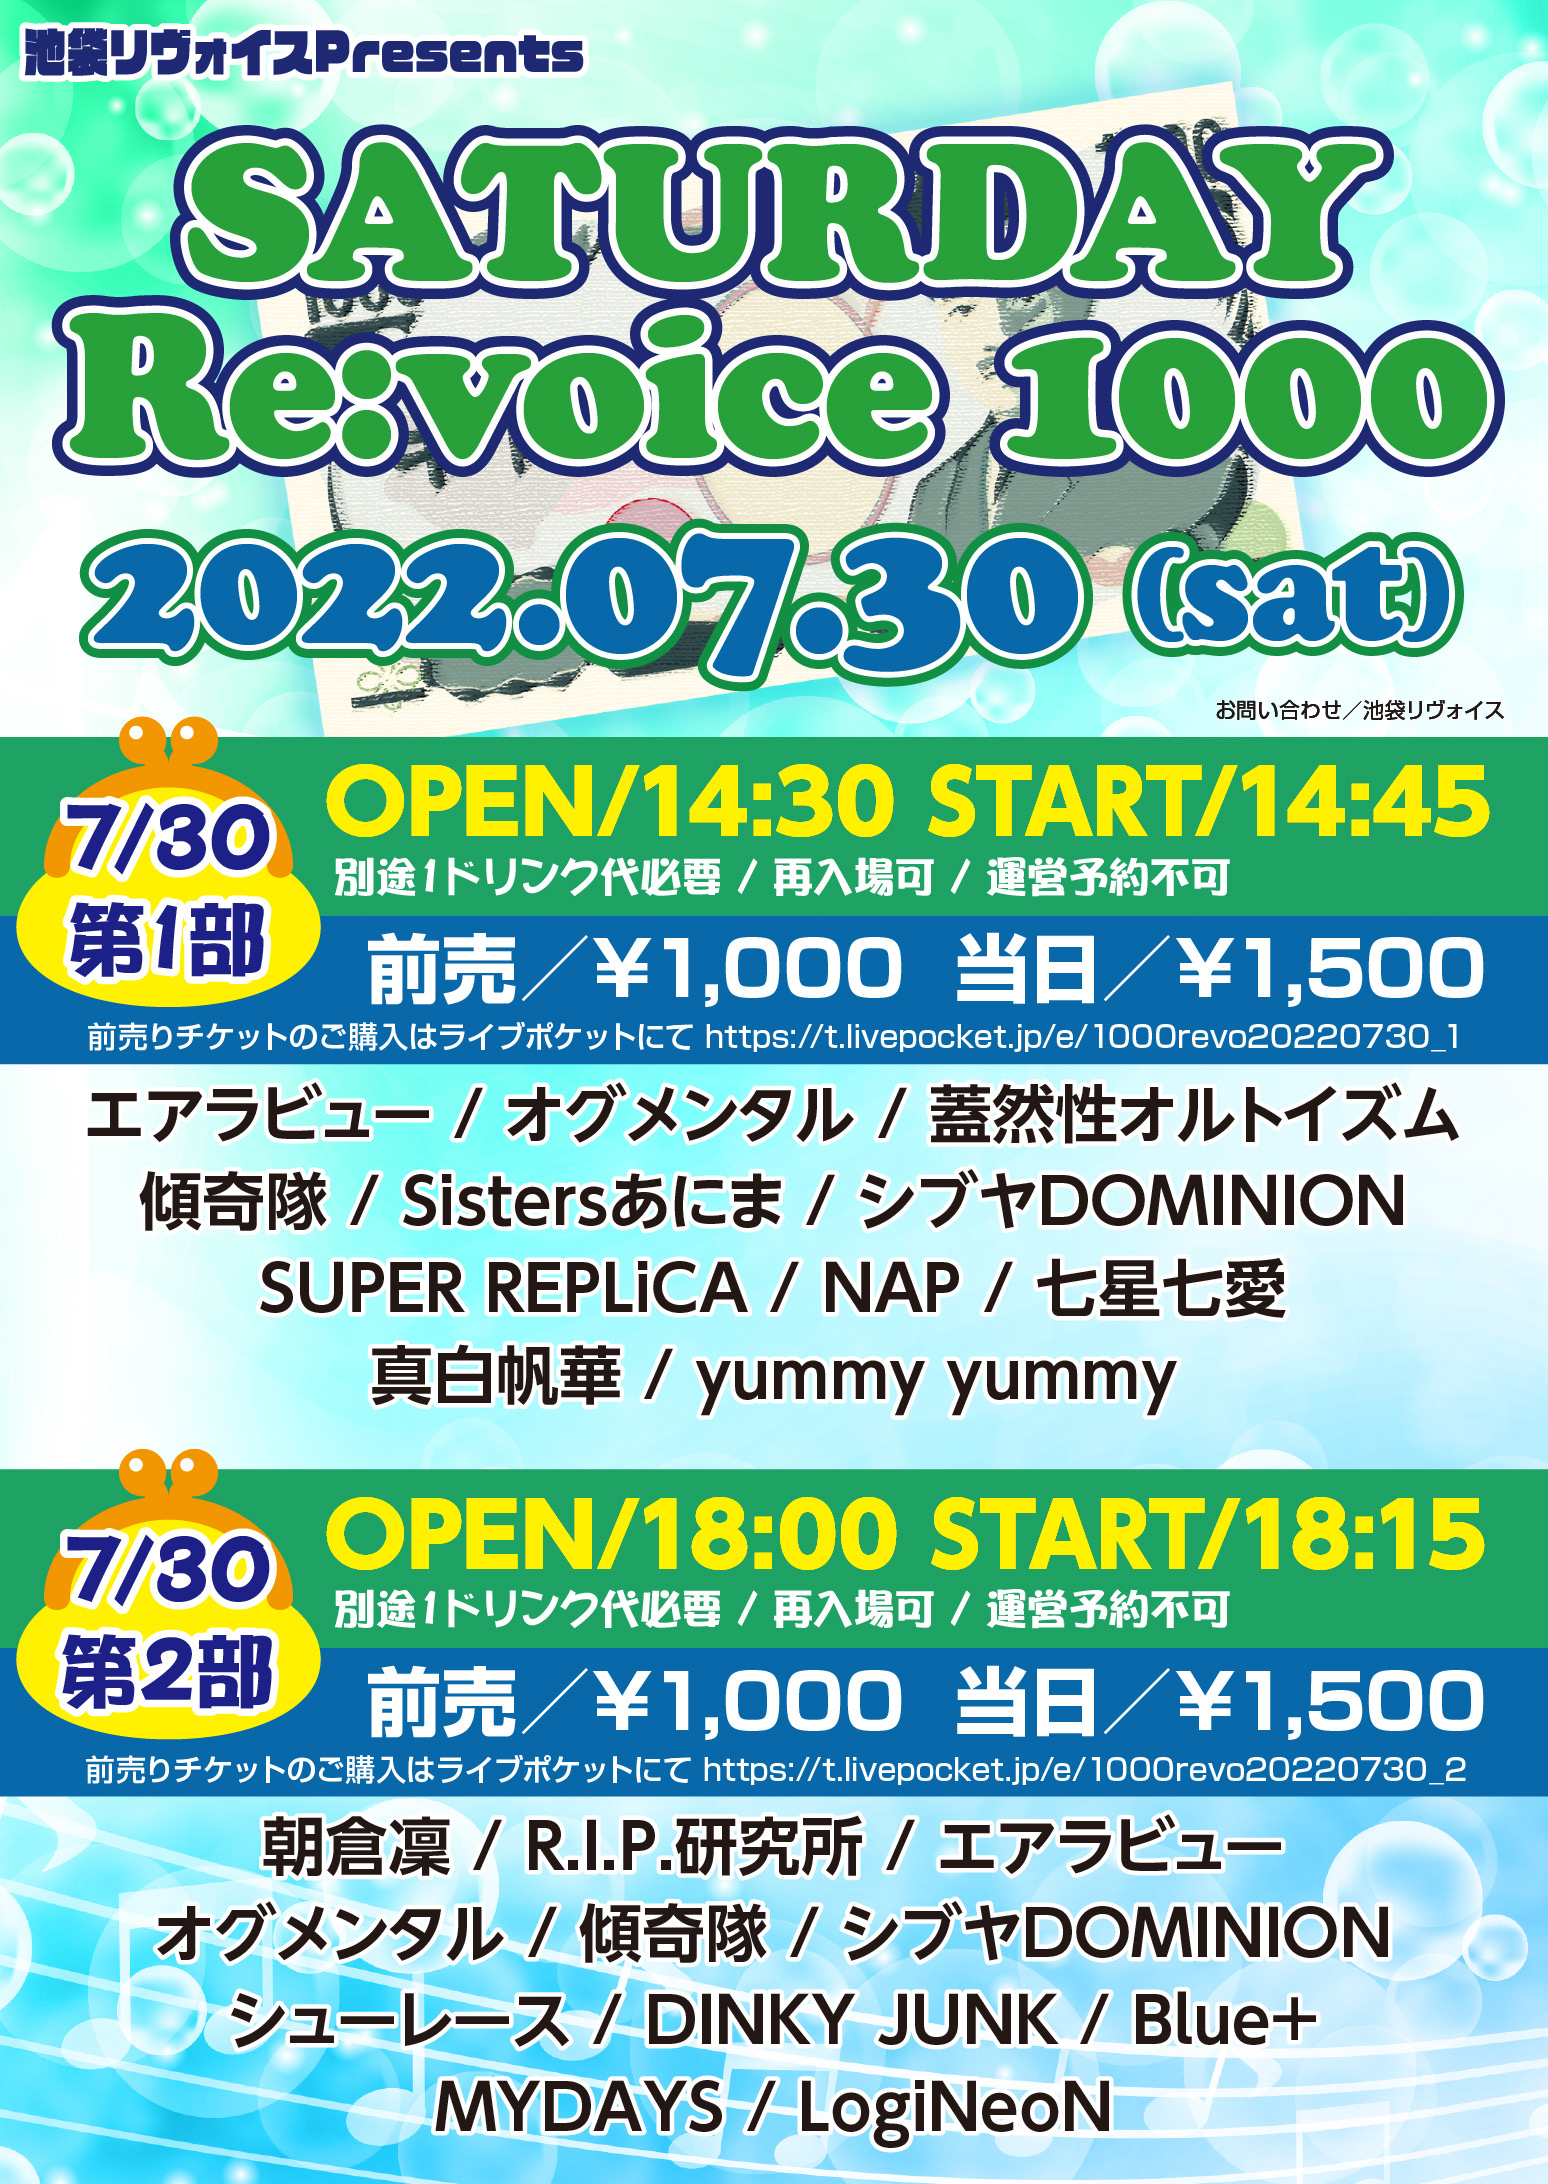 【第二部】SATURDAY Re:voice 1000